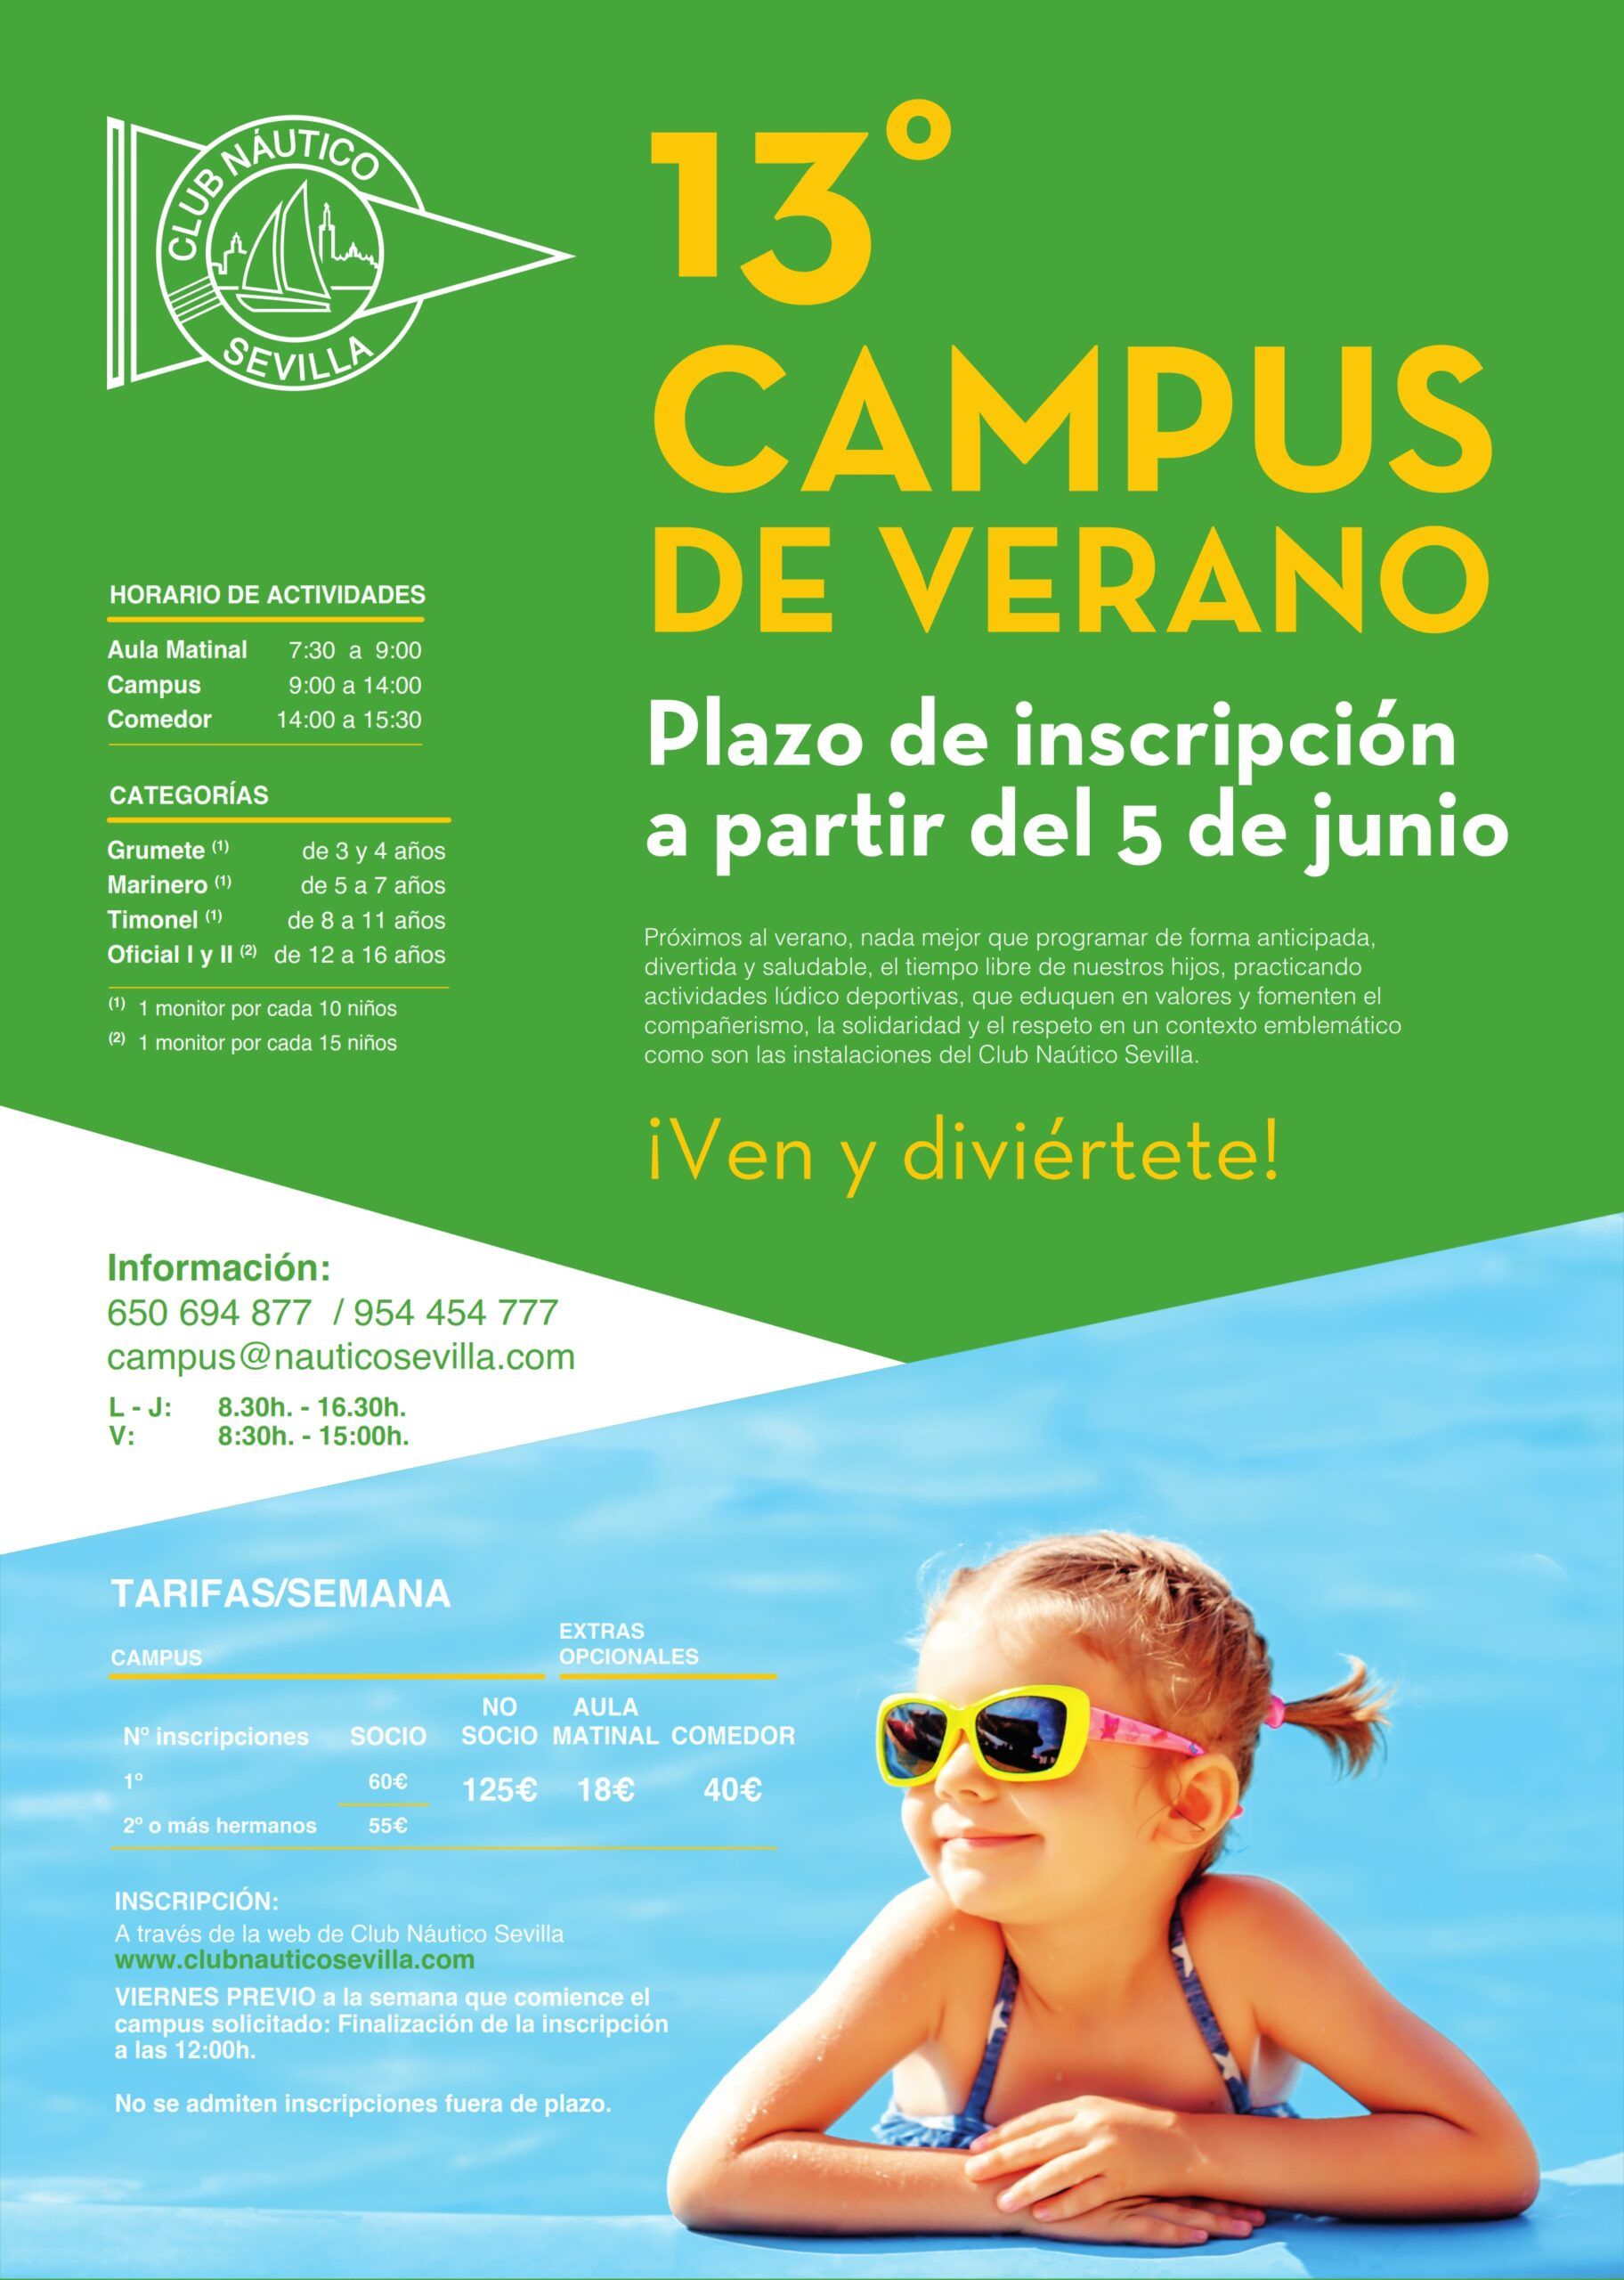 Campus de verano del Club Náutico Sevilla